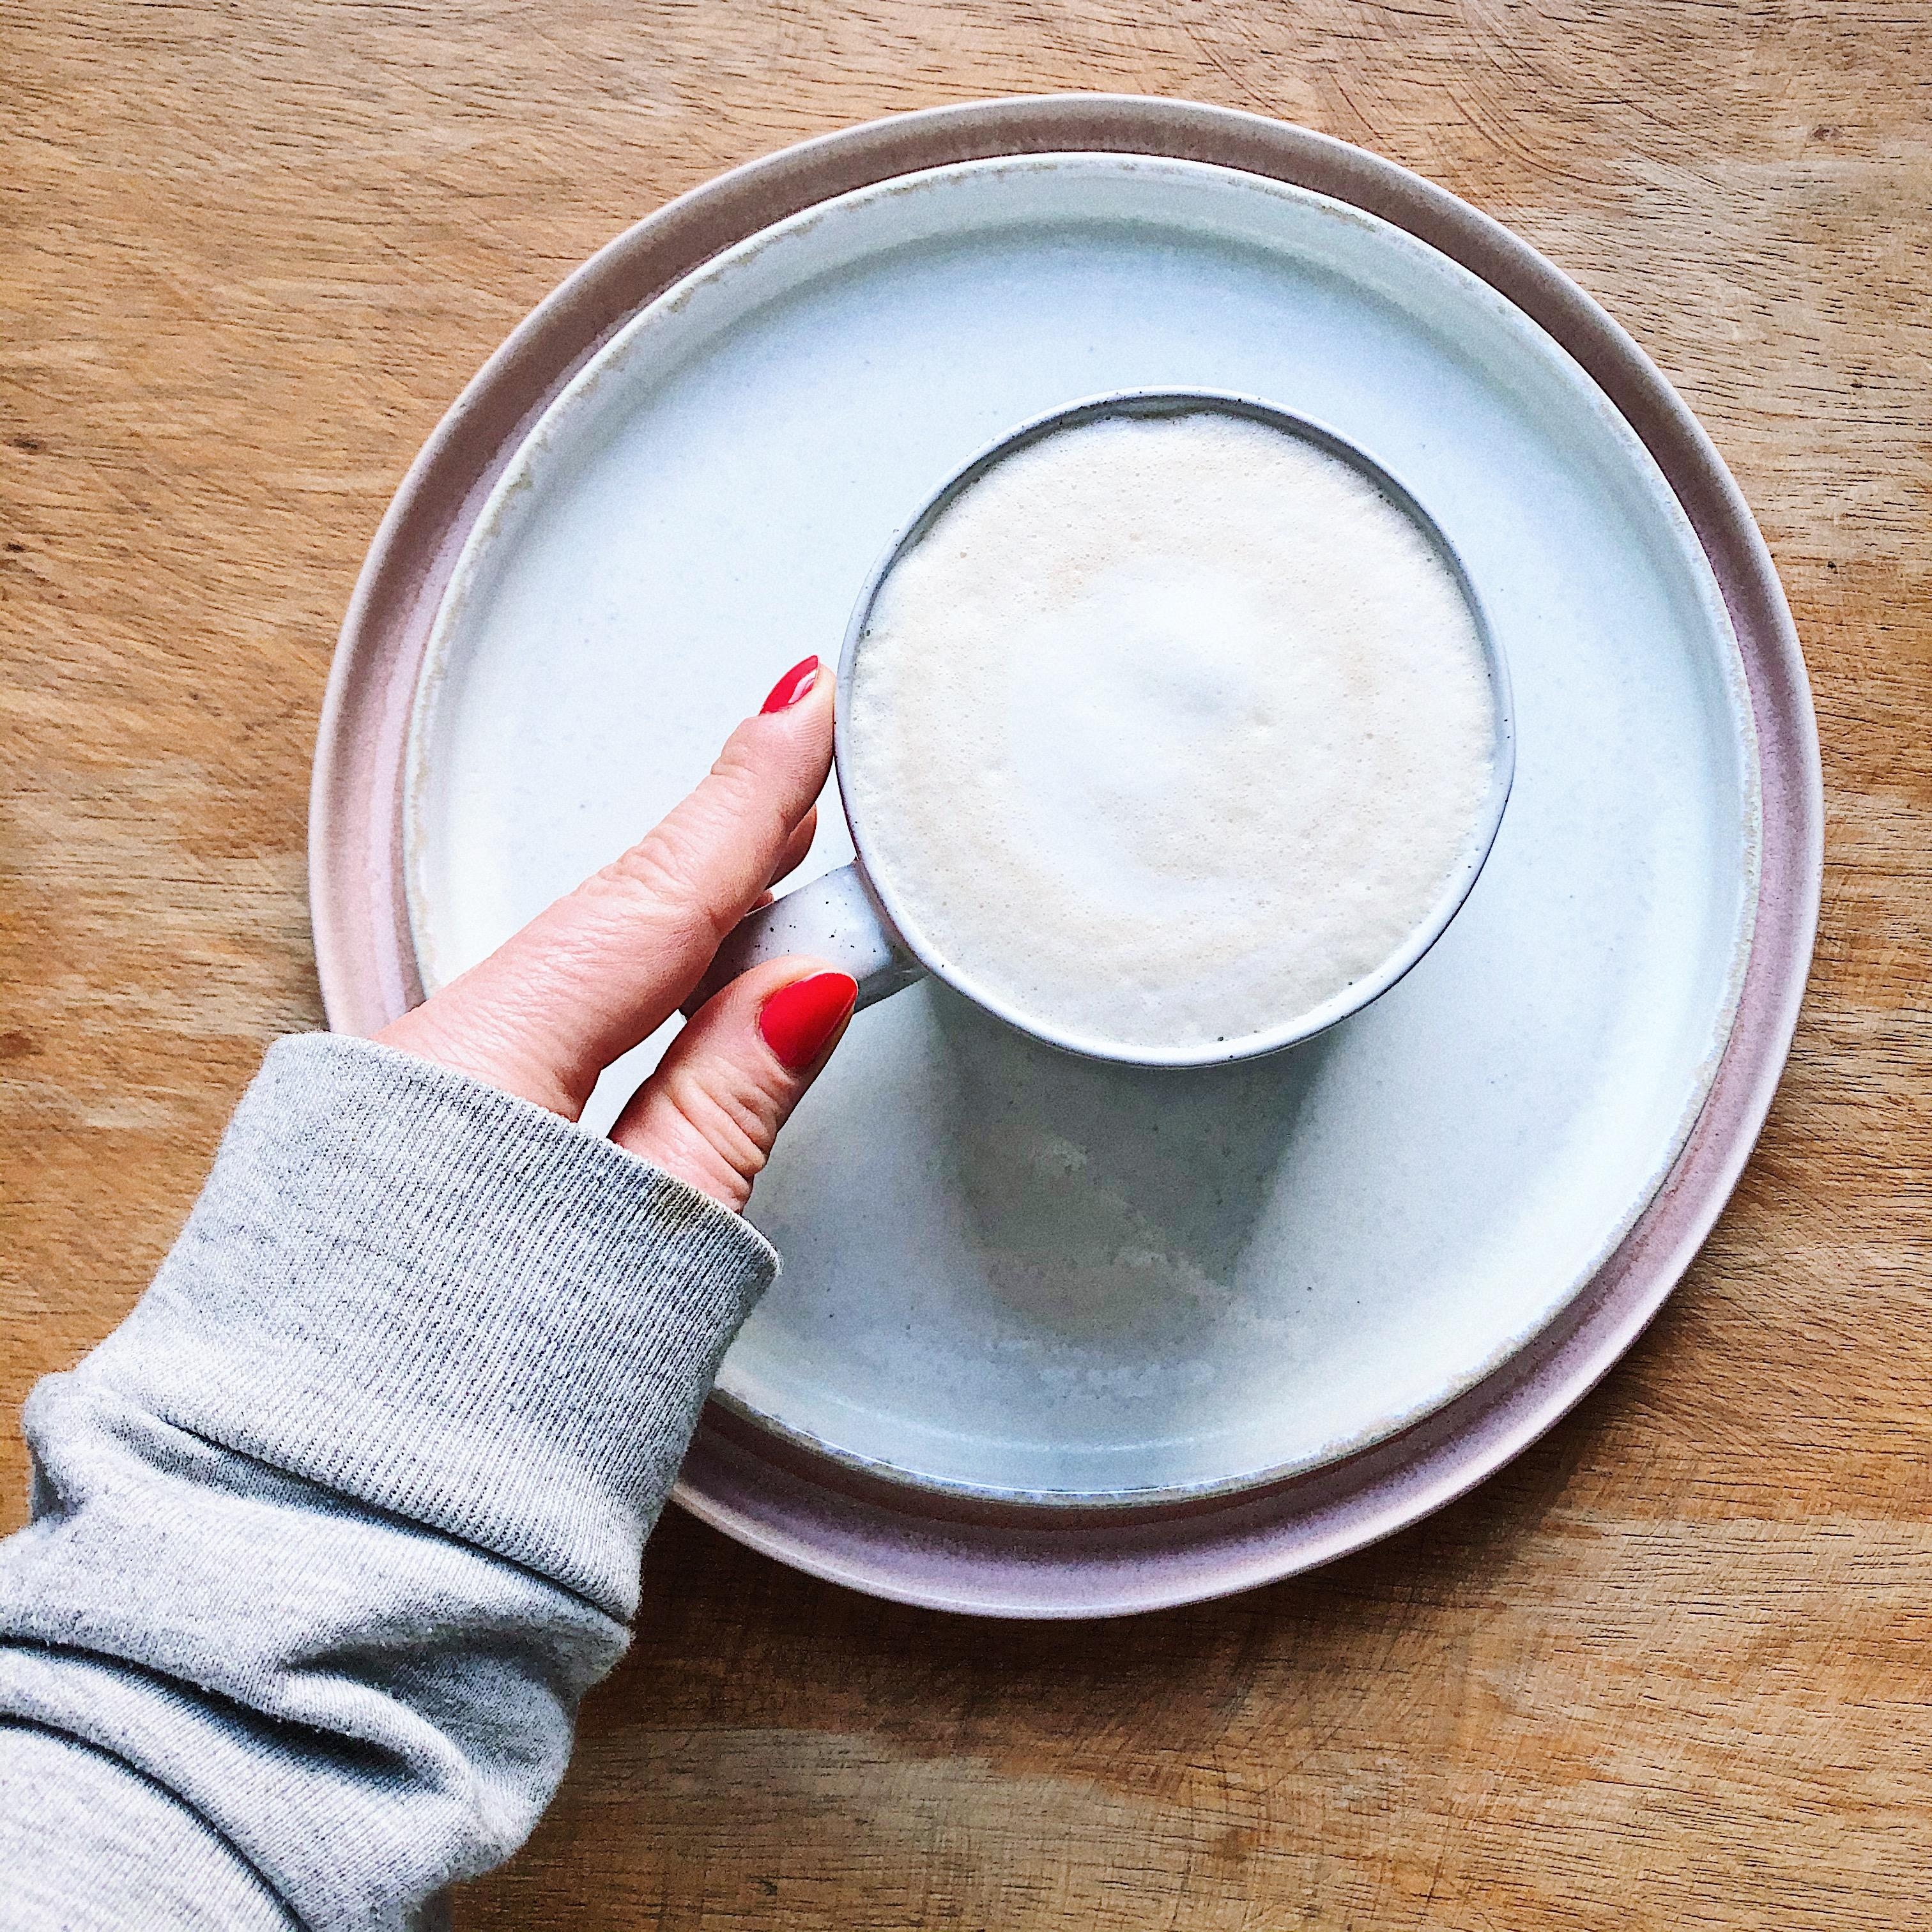 Zwei Lieben auf einem Bild: Kaffee und Porzellan ✨
#Kaffee #Geschirr #Porzellan #Keramik